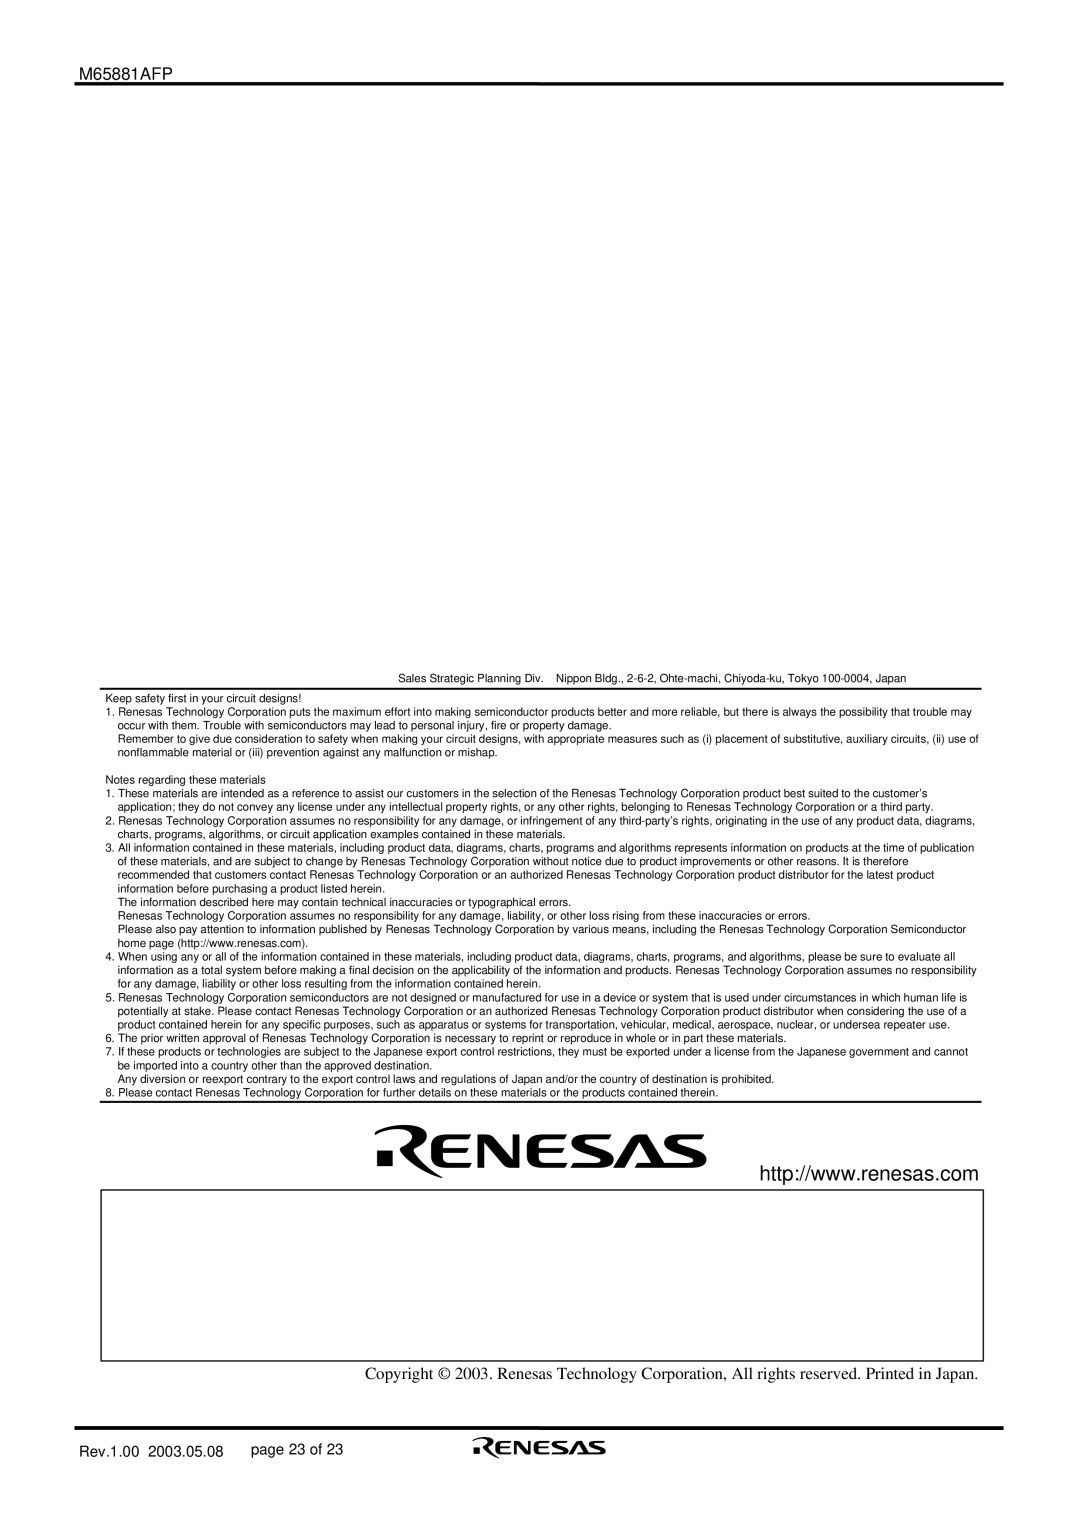 Renesas M65881AFP manual Rev.1.00, page 23 of 